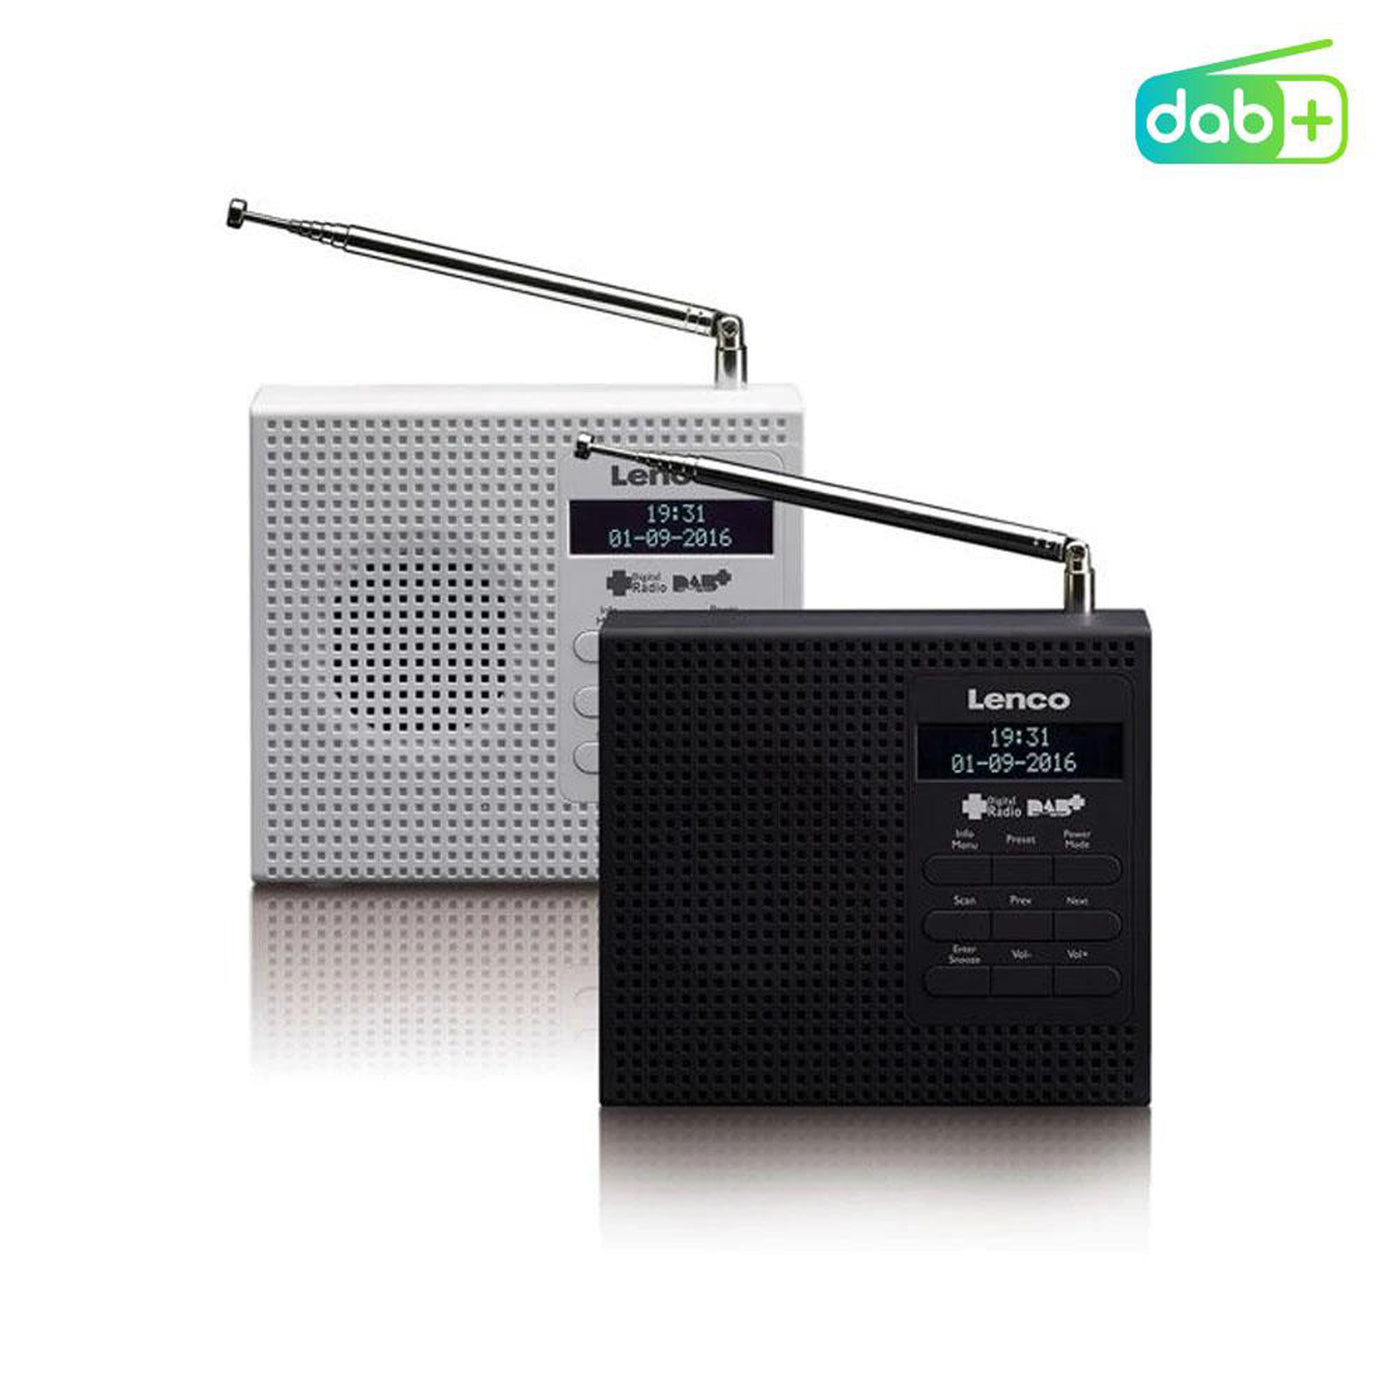 LENCO PDR-020WH - Radio przenośne Radio DAB+ FM z funkcją alarmu - Białe